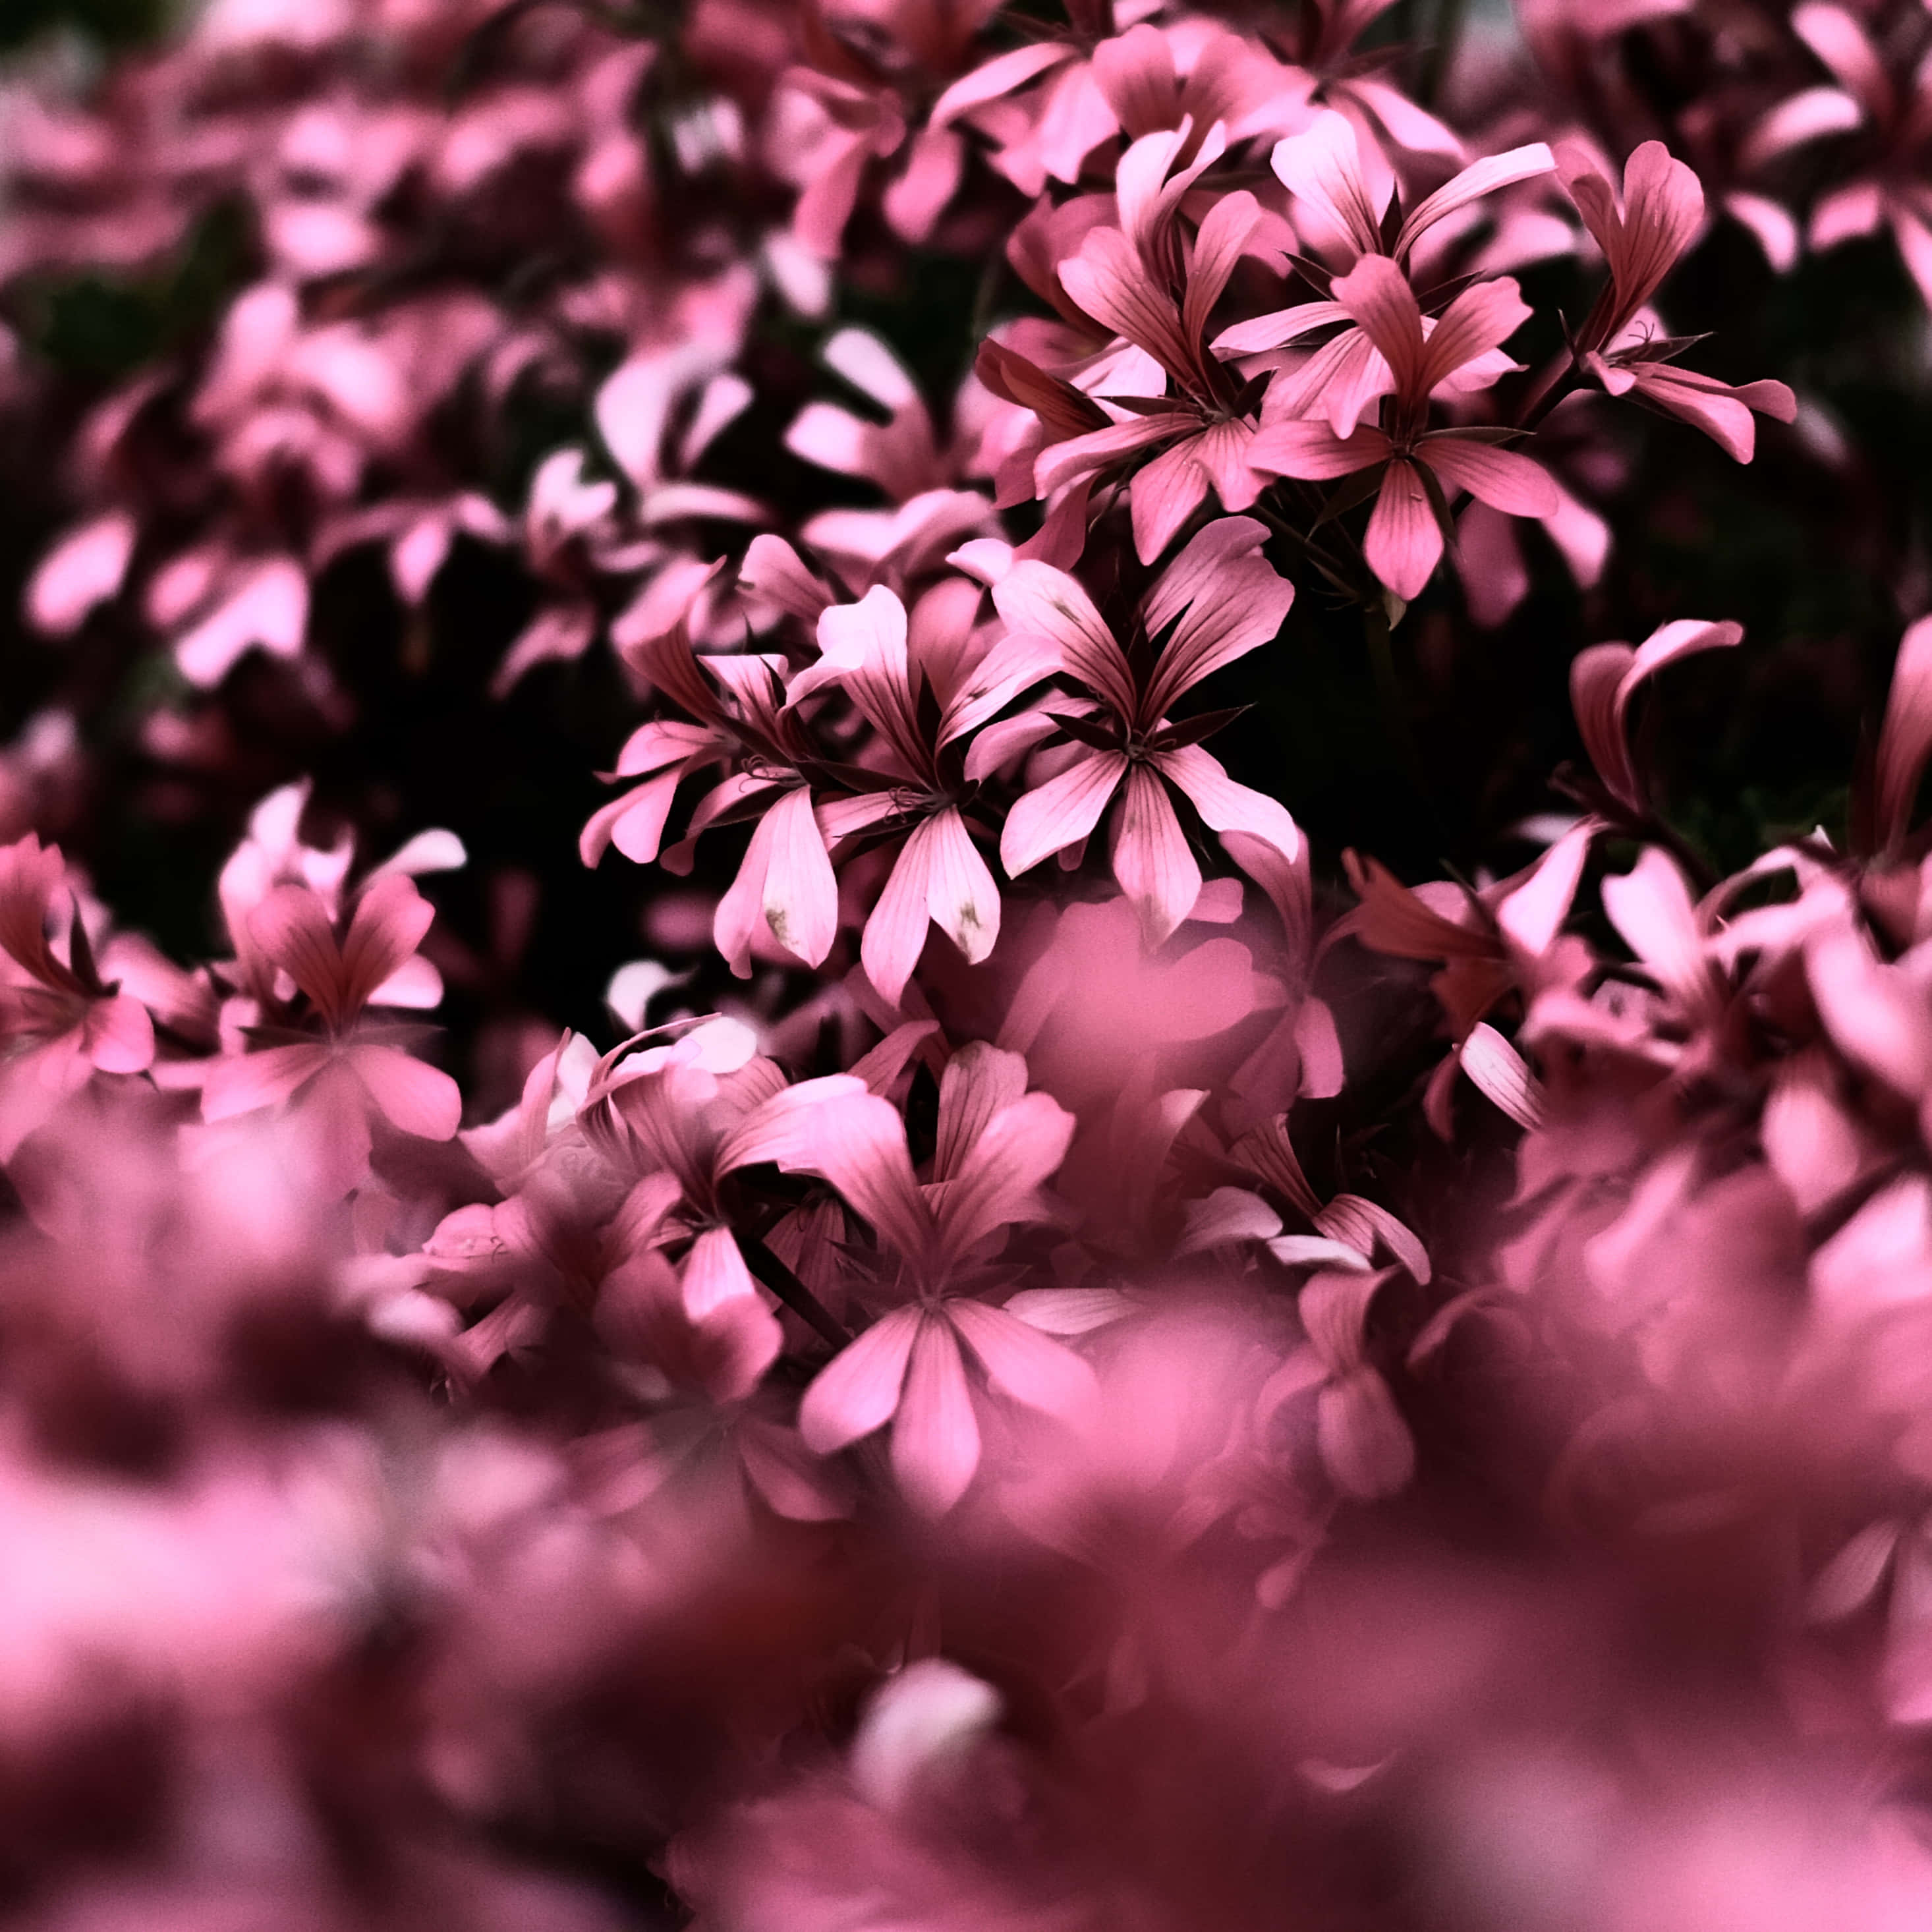 Pink Flowers In The Garden Wallpaper